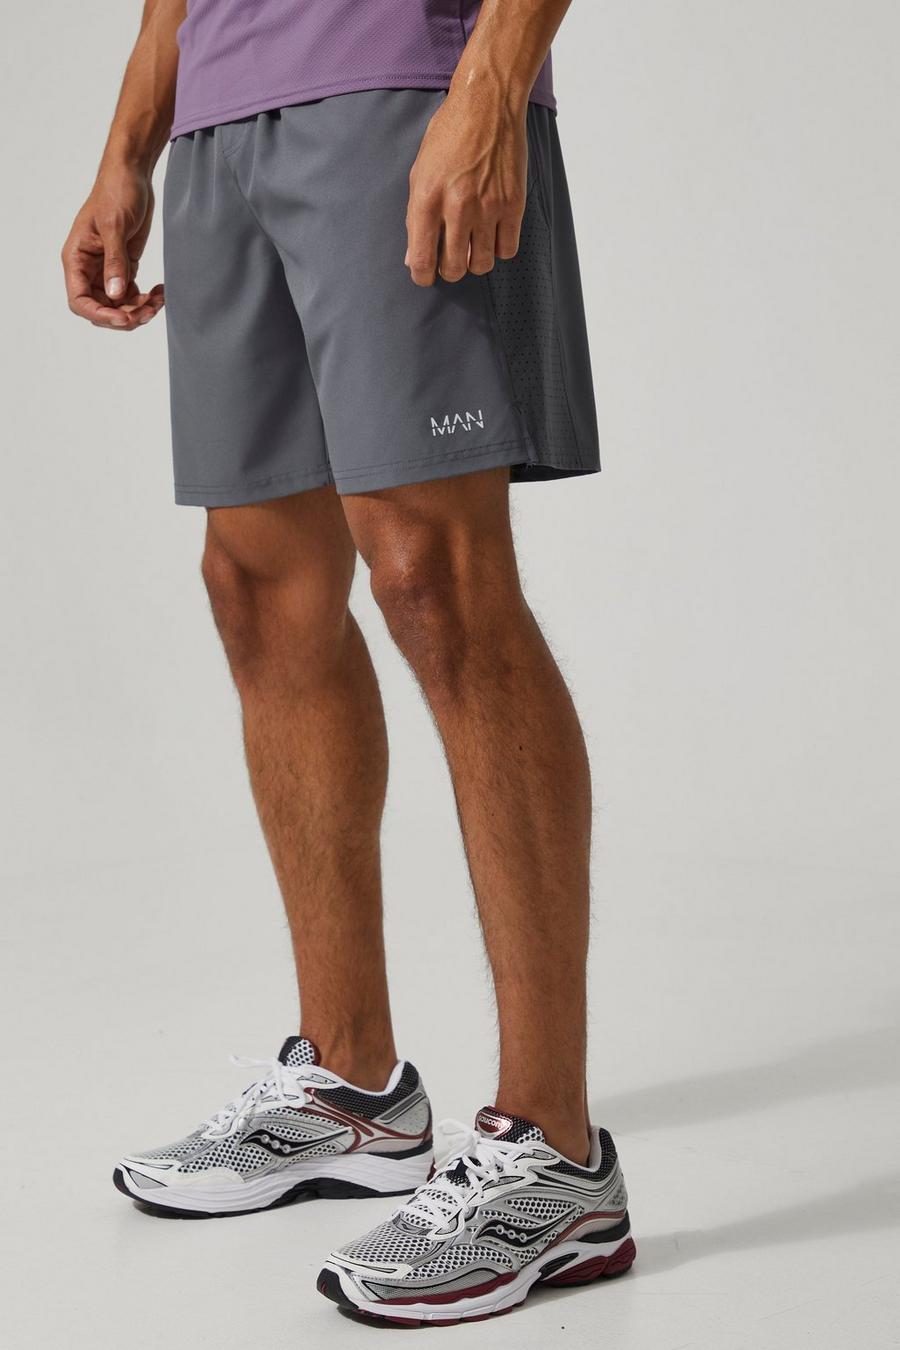 Man Active Mesh-Shorts, Charcoal